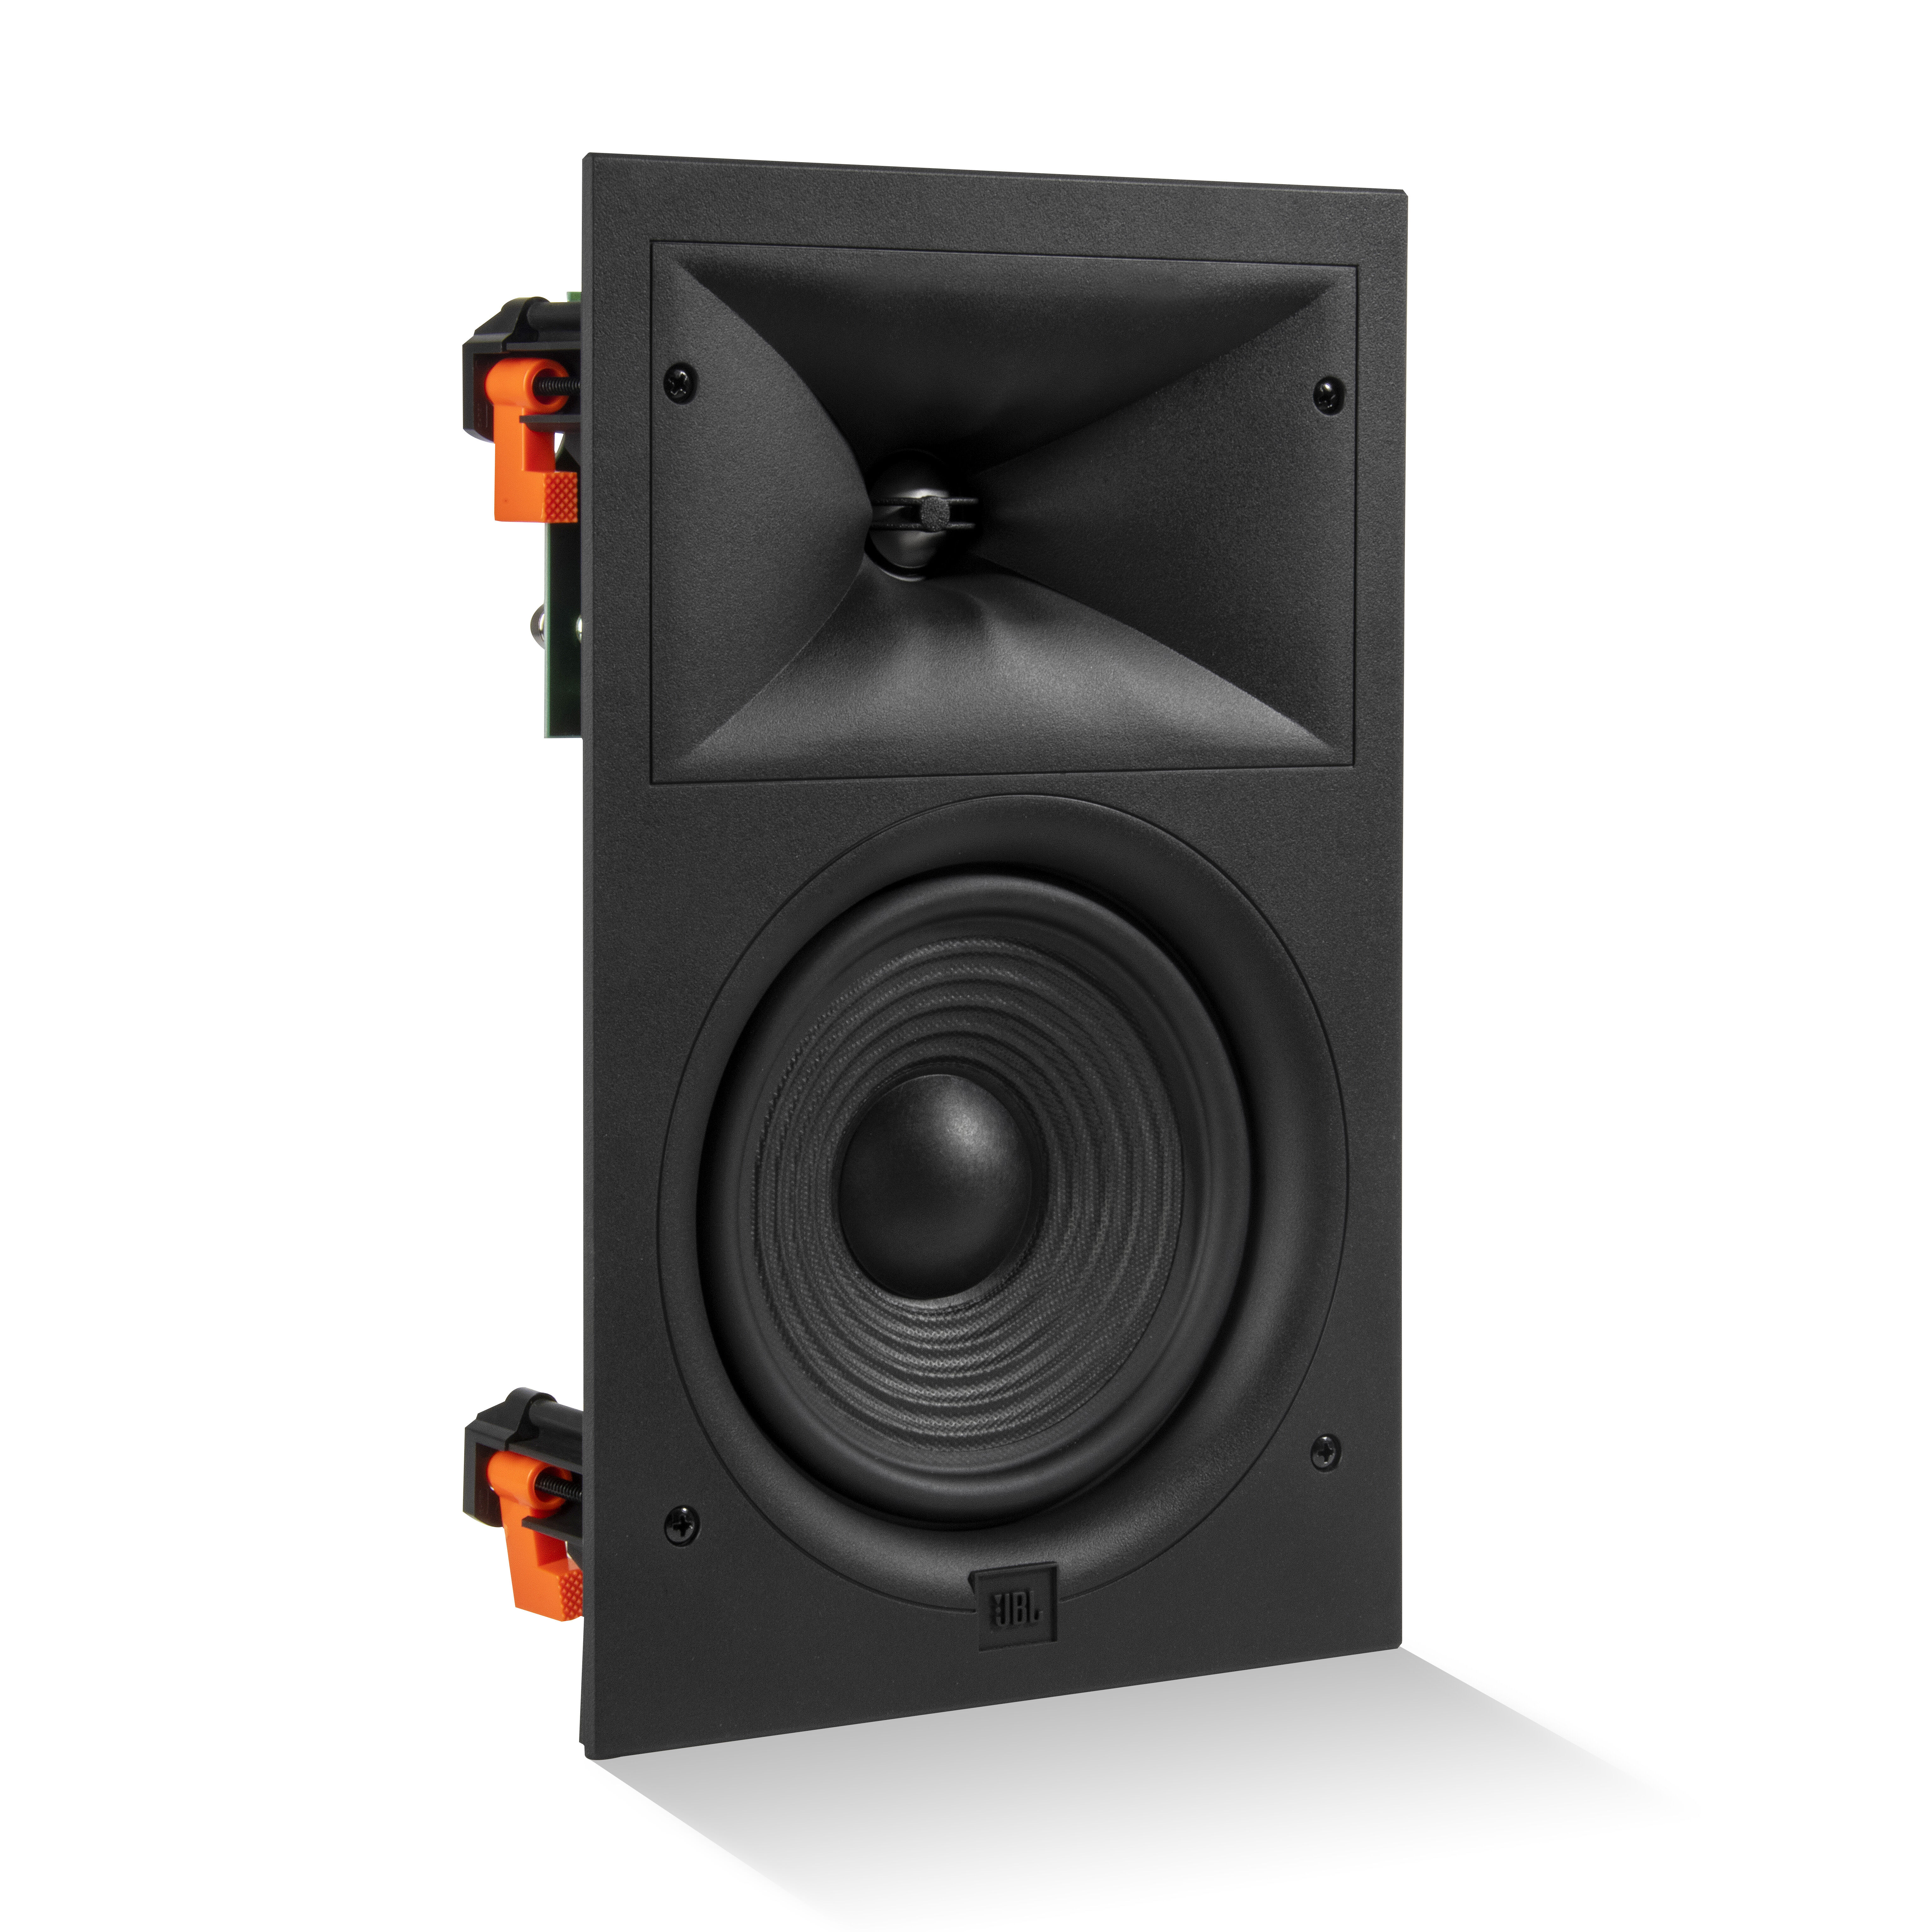 The new JBL Authentics speakers combine retro style and premium sound